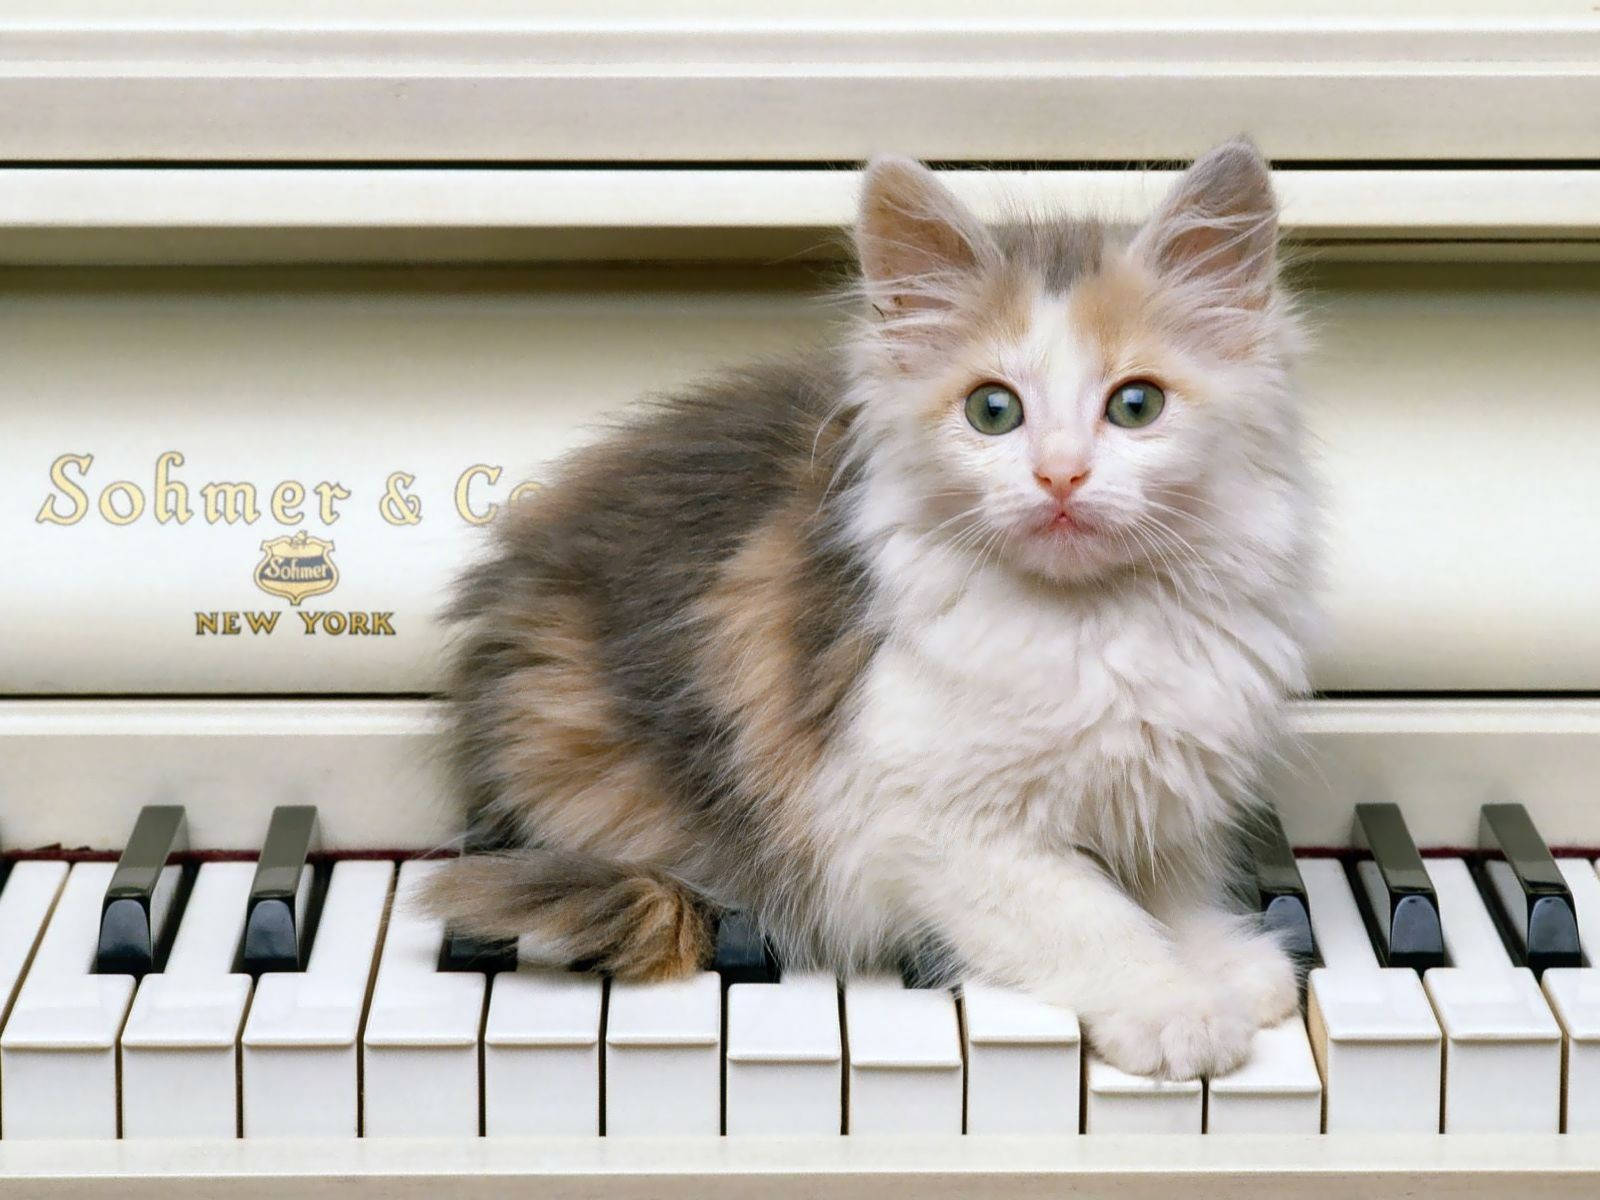 Cute Kitty On Piano Keys